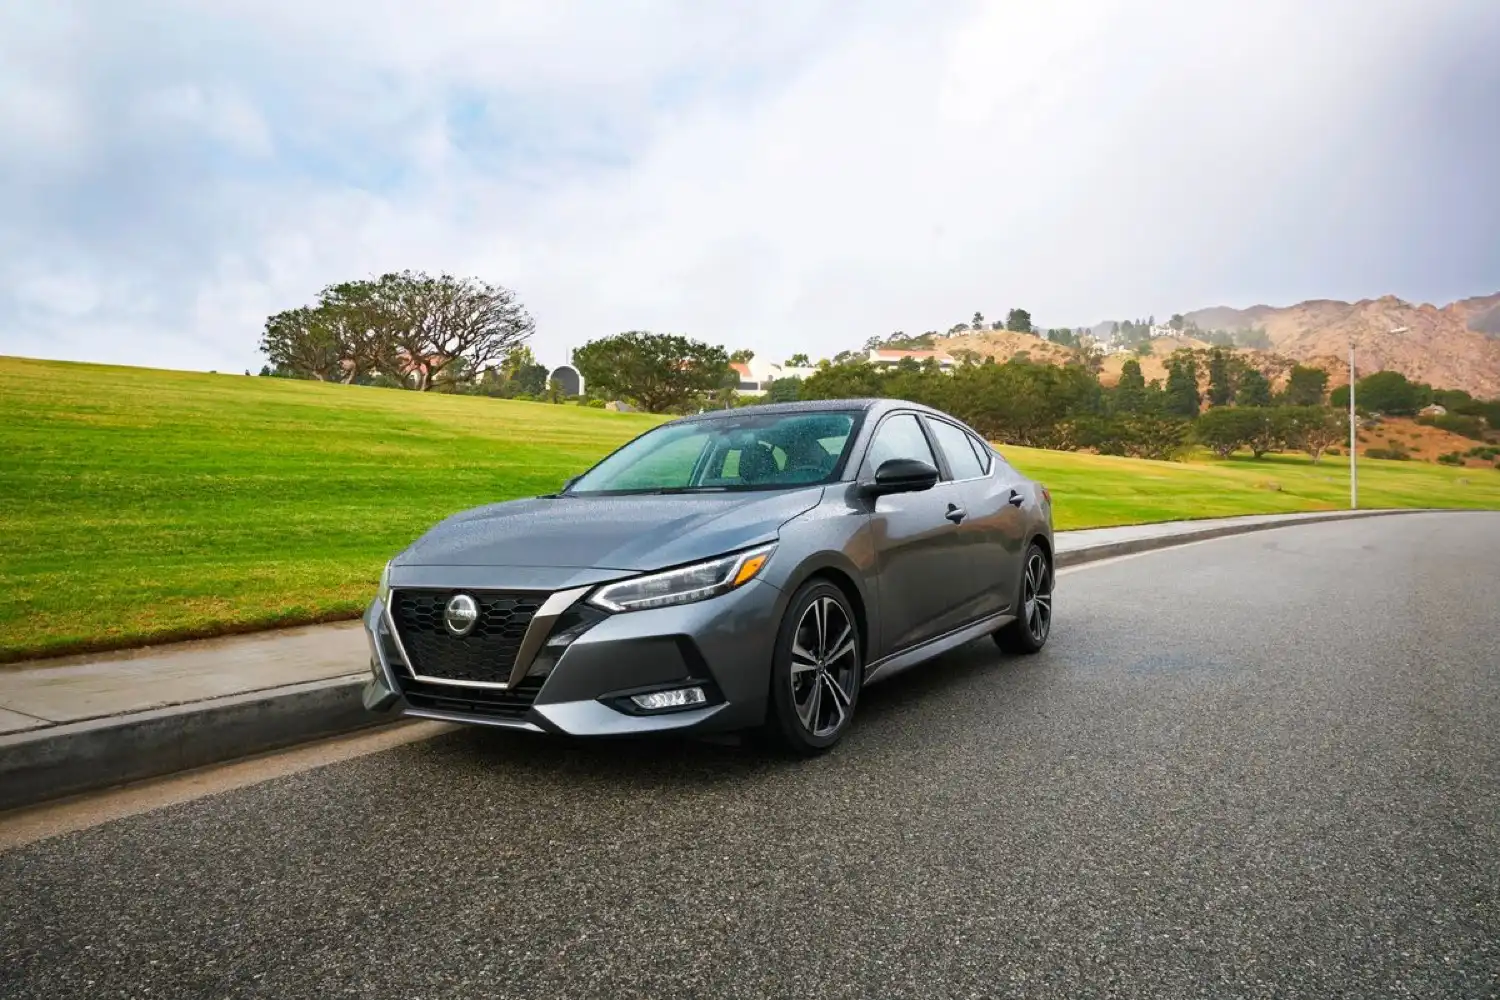 Nissan Seguros: Nueva póliza vehicular con beneficios exclusivos